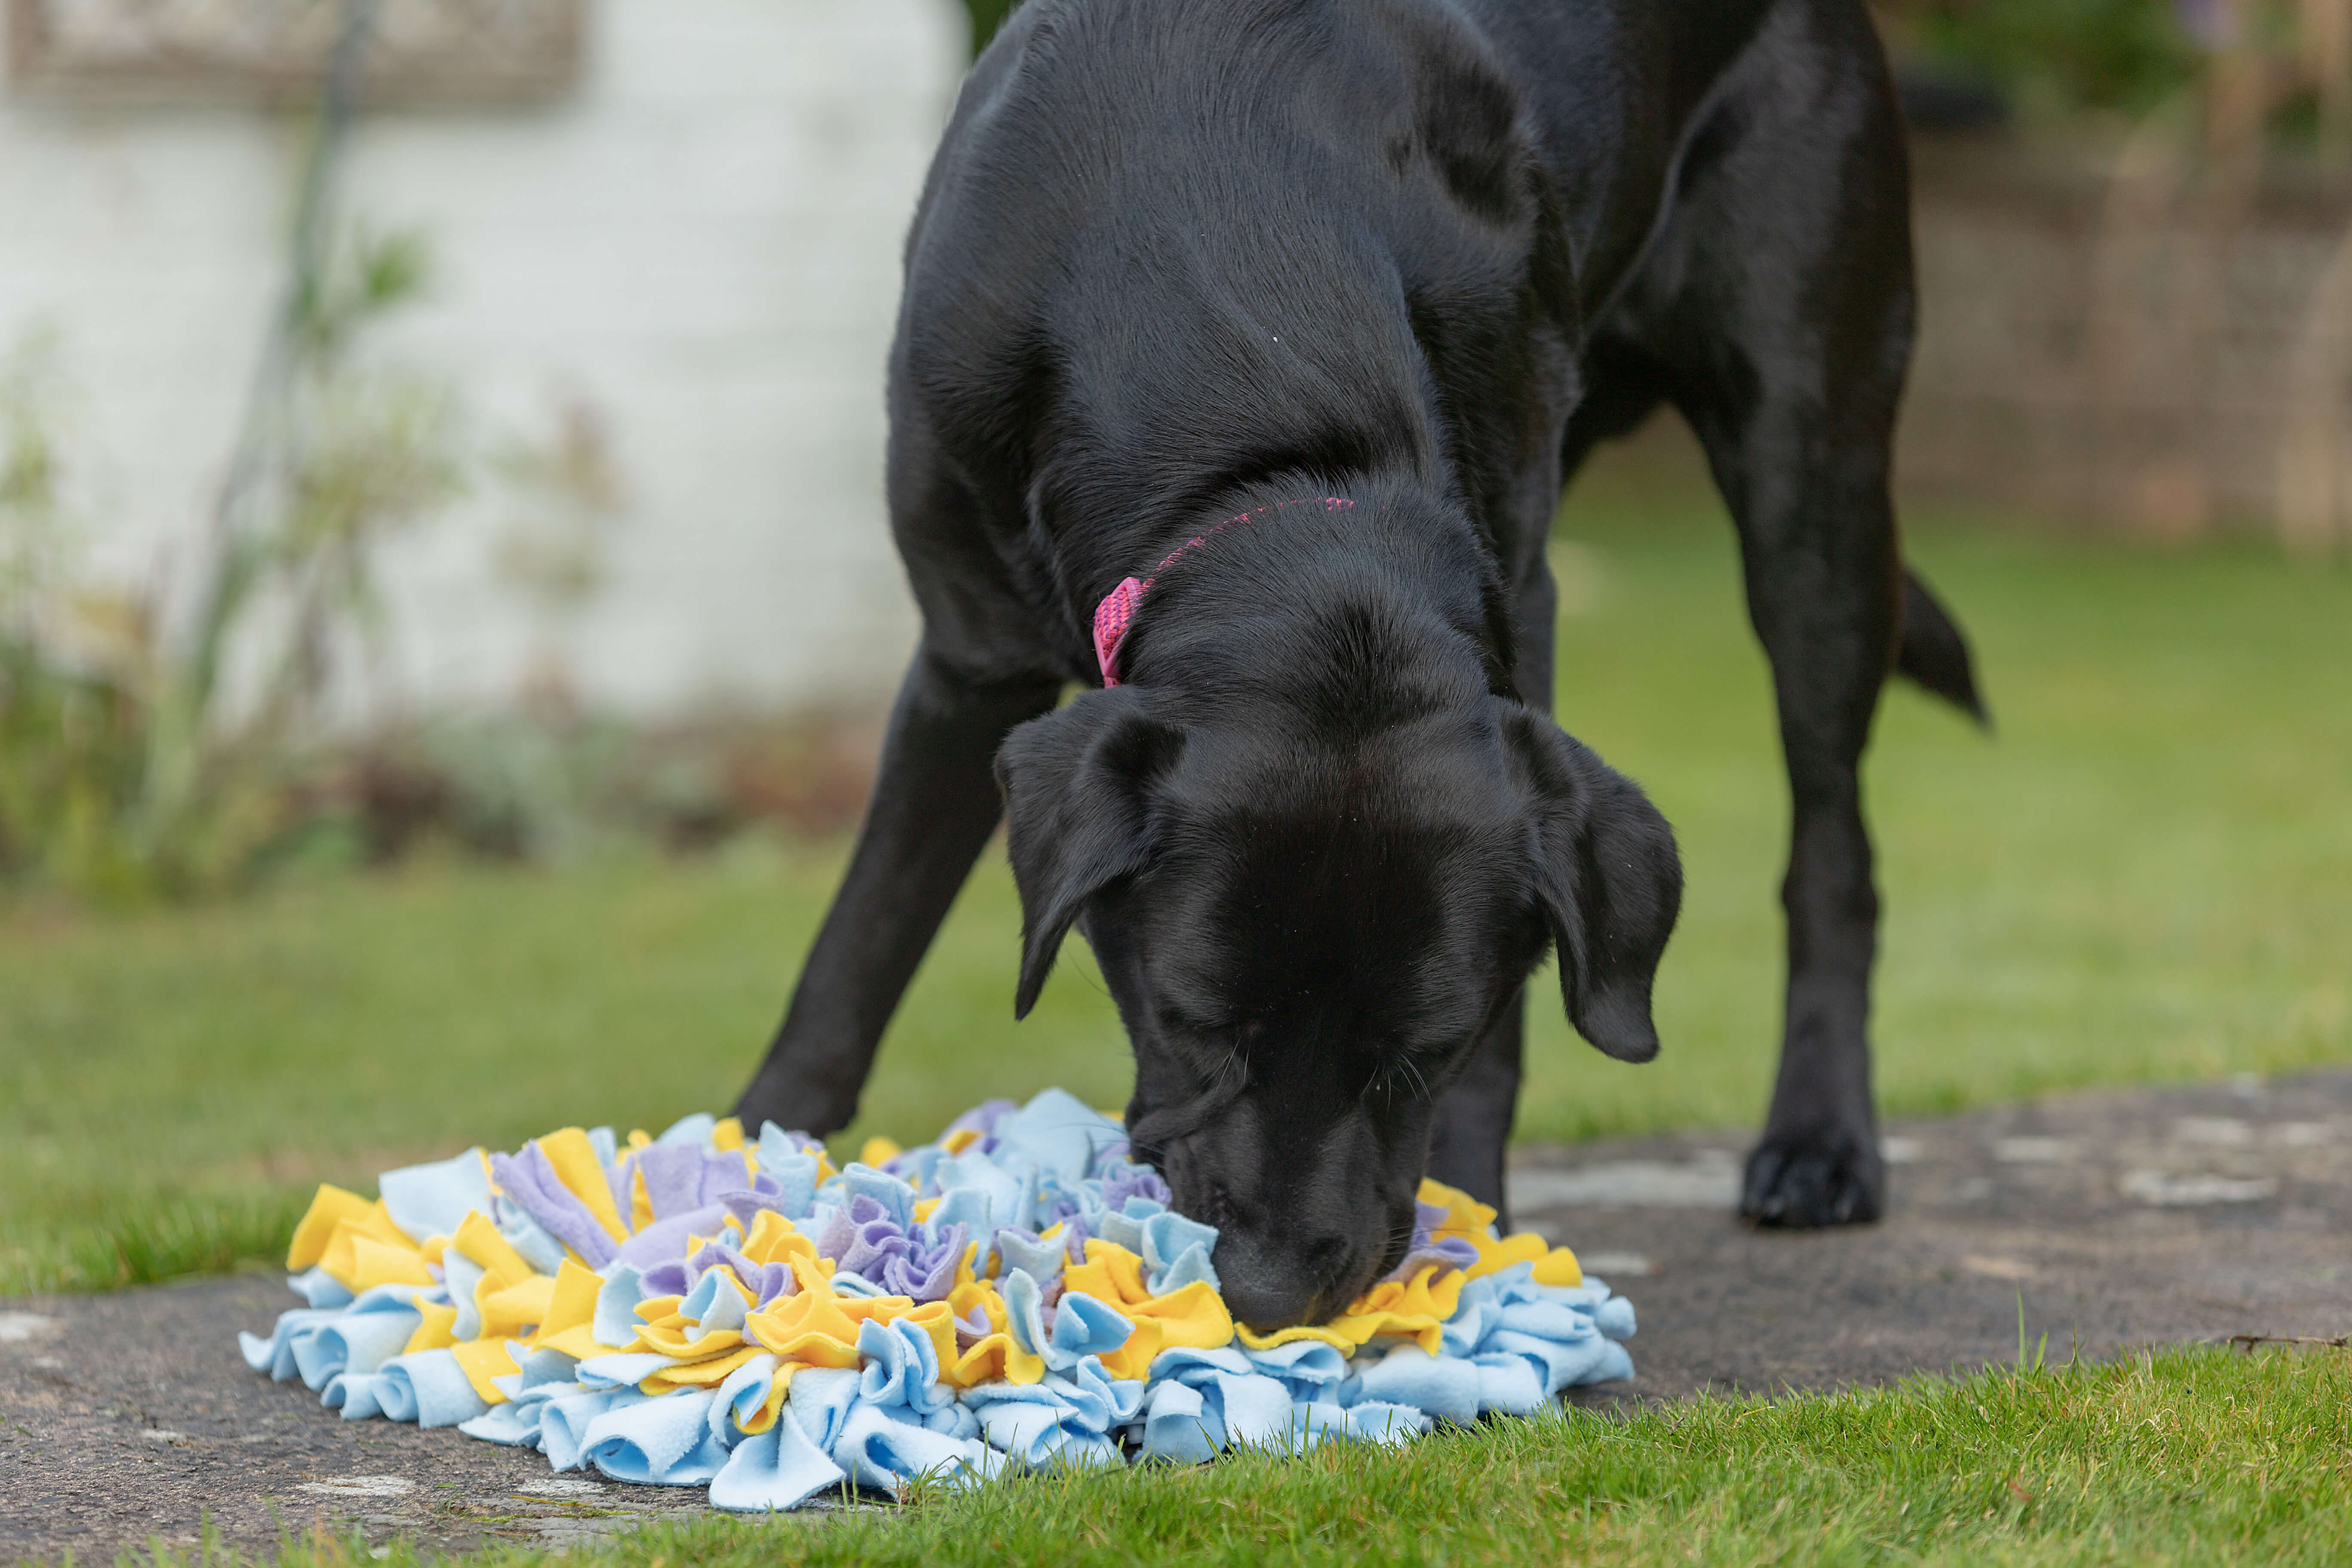 A black Labrador guide dog enjoys treats hidden in a colourful fleece snuffle mat out in a garden